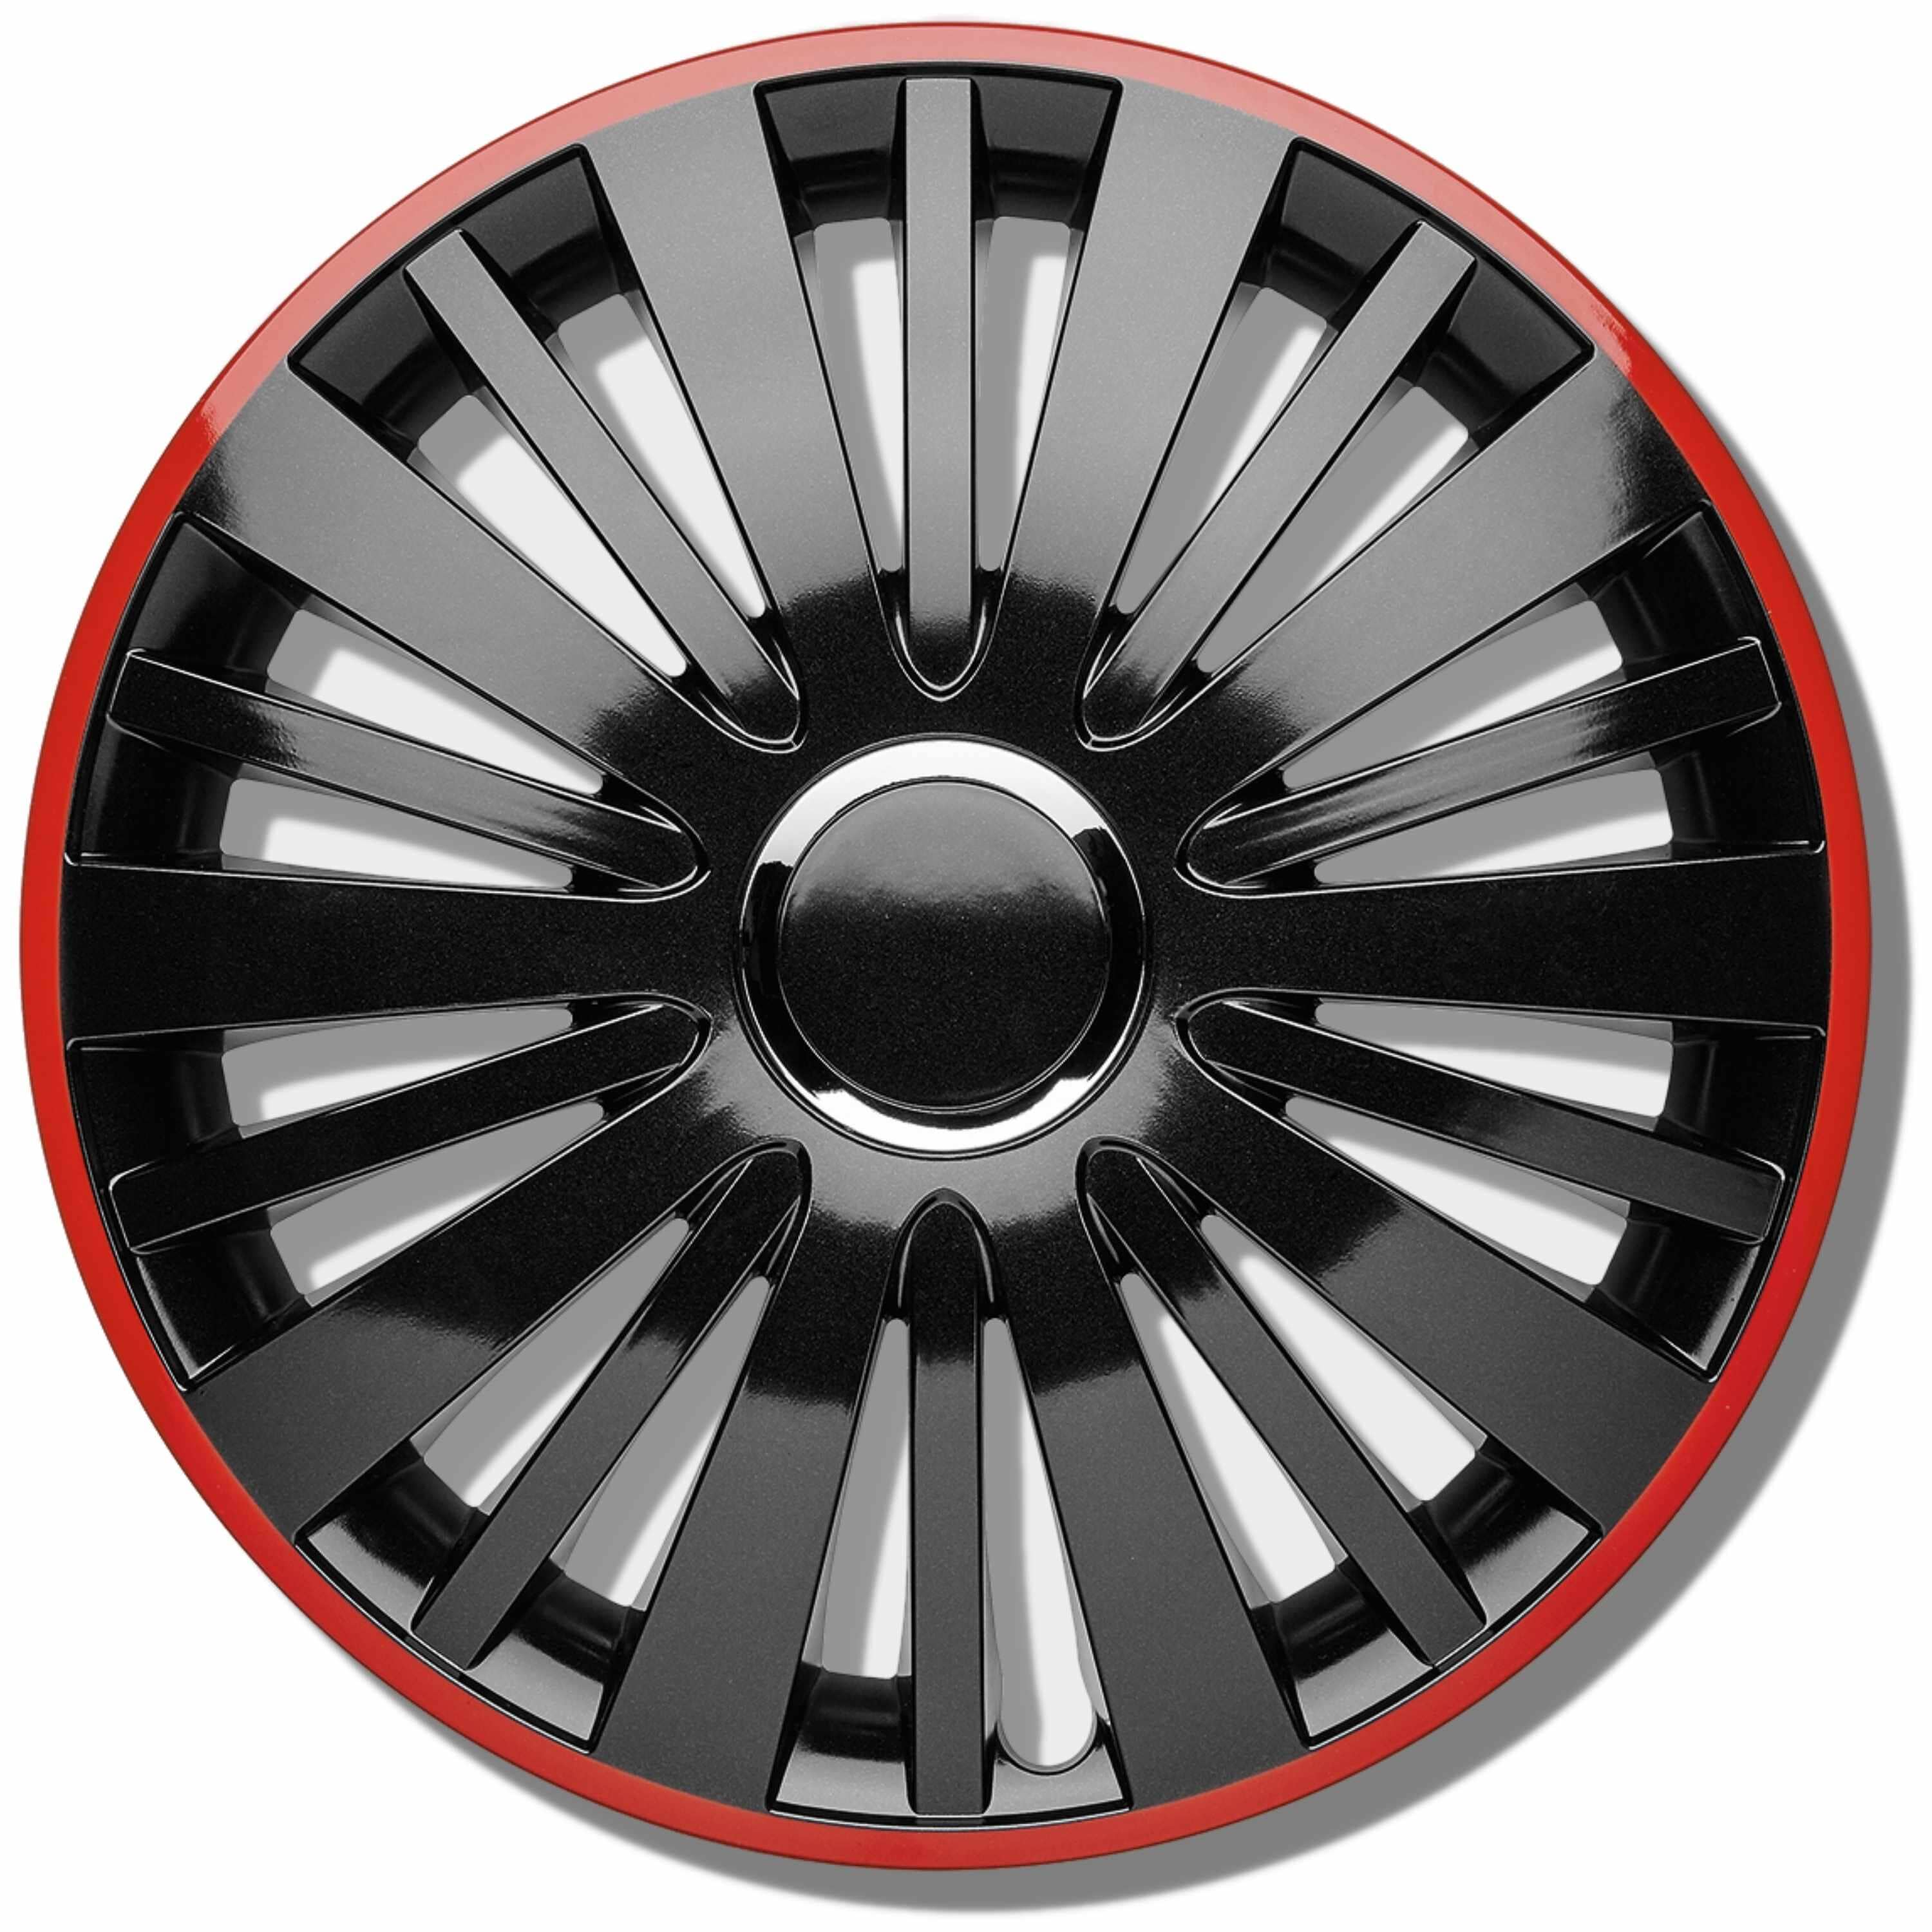 Radkappen silber-schwarz oder schwarz-rot Radzierblenden Falcon Twilight 13-16 Zoll